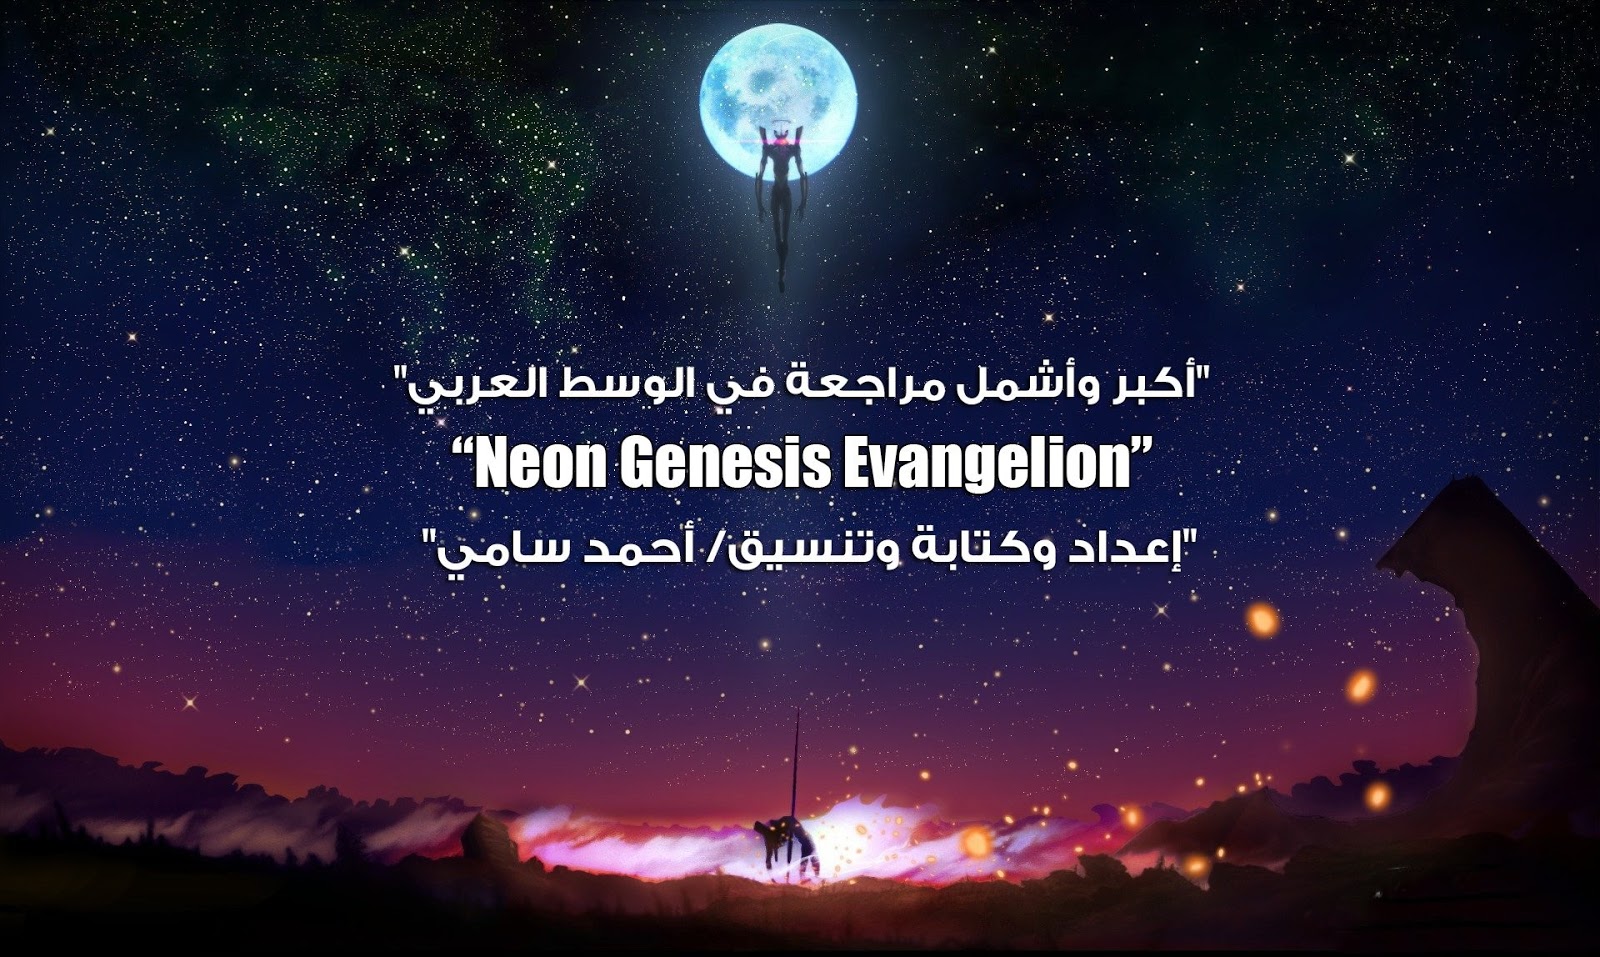 أكبر وأشمل مراجعة في الوسط العربي عن Neon Genesis Evangelion!